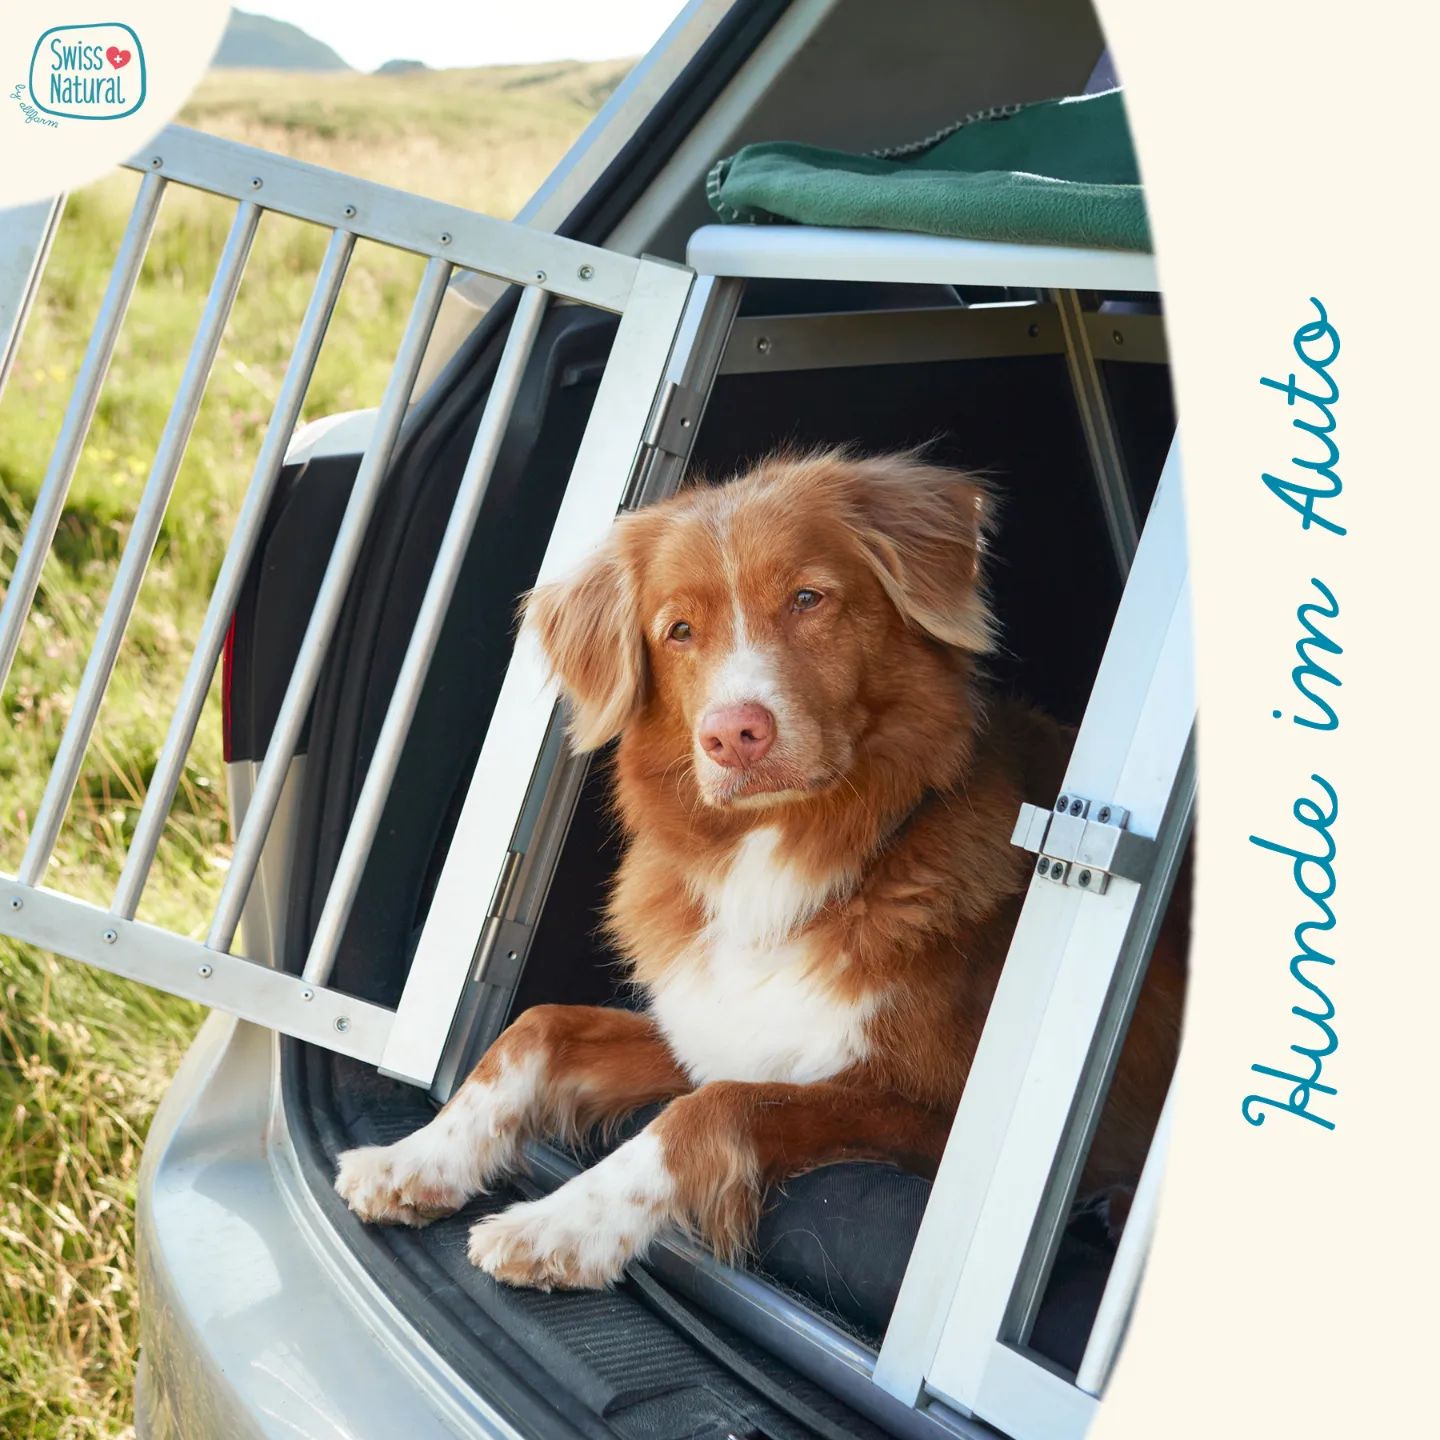 🐶🚗 Transport im Auto 🚗🐶

...wenn es darum geht, deinen pelzigen Freund sicher von A nach B zu bringen, ist die Wahl des richtigen Transportmittels im Auto entscheidend.

Wie transportierst du deinen Hund?

In unserem neuen Blogbeitrag gehen wir näher auf dieses Thema ein. Den Link findest du in der Bio ☝🏼

.
.
.
.
.

#swissnatural #swissnaturalbyallfarm #swissdogfood #swissmade #swissquality🇨🇭 #swiss #schweizerhundefutter #schweizerfleisch #schweizerherkunft #schweizerunternehmen #schweizerherstellung #schweizerqualität #semimoist #softeshundefutter #softfutter #soft #transport #transportbox #saftyfirst #hundebox #blog #neuerblogbeitrag